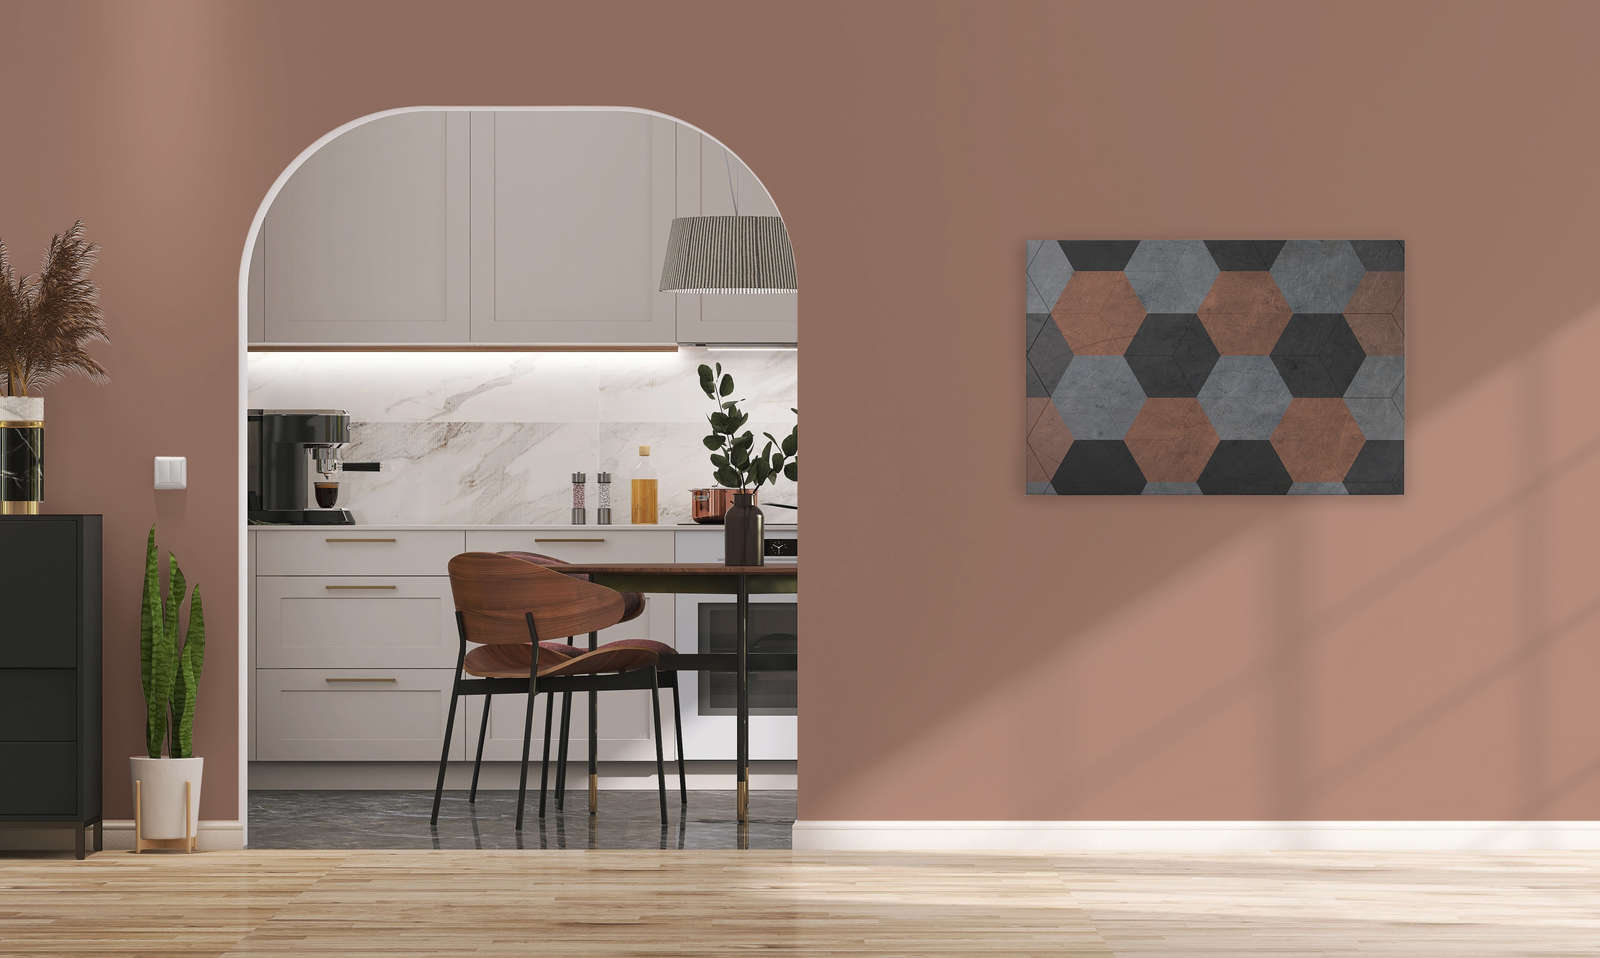             Tableau toile avec carreaux hexagonaux style vintage - 0,90 m x 0,60 m
        